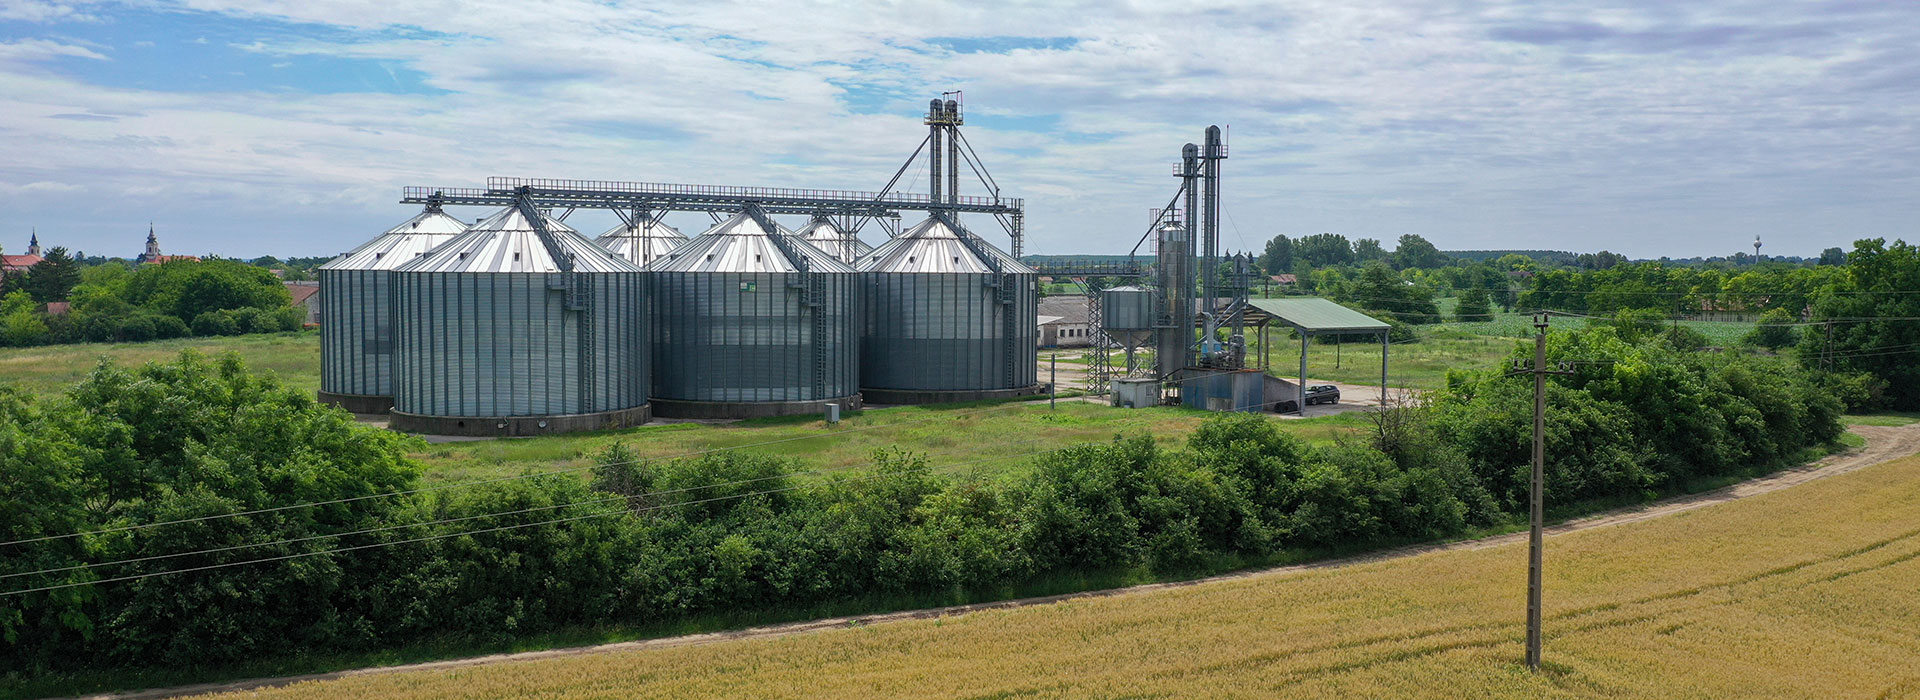 Grain silos; source: Adobe Stock Photos